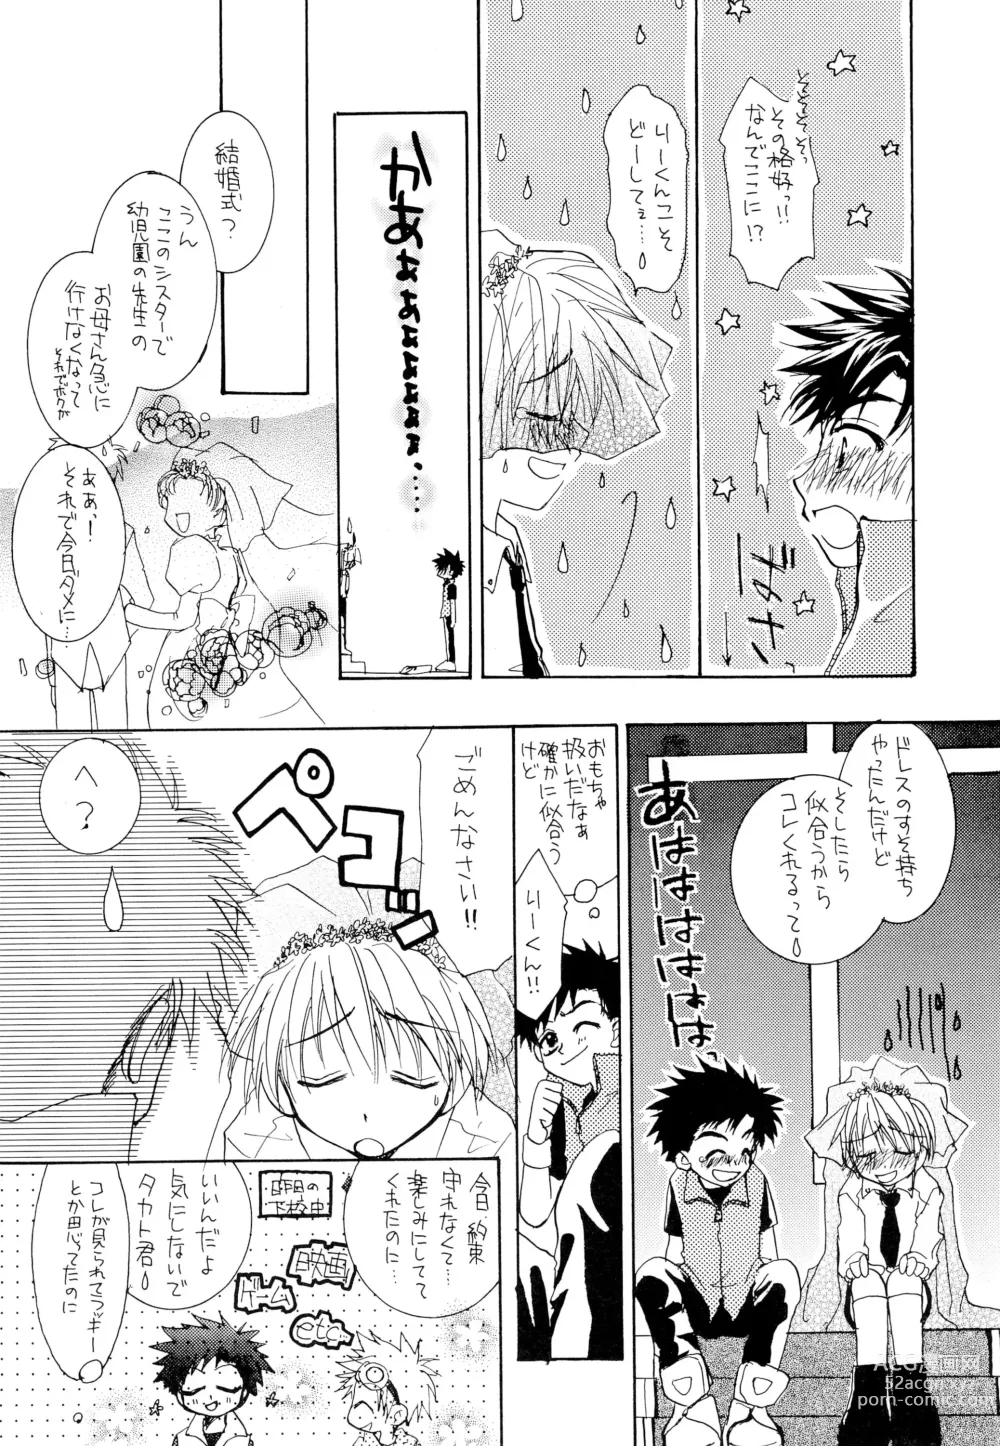 Page 8 of doujinshi LiTaka 2